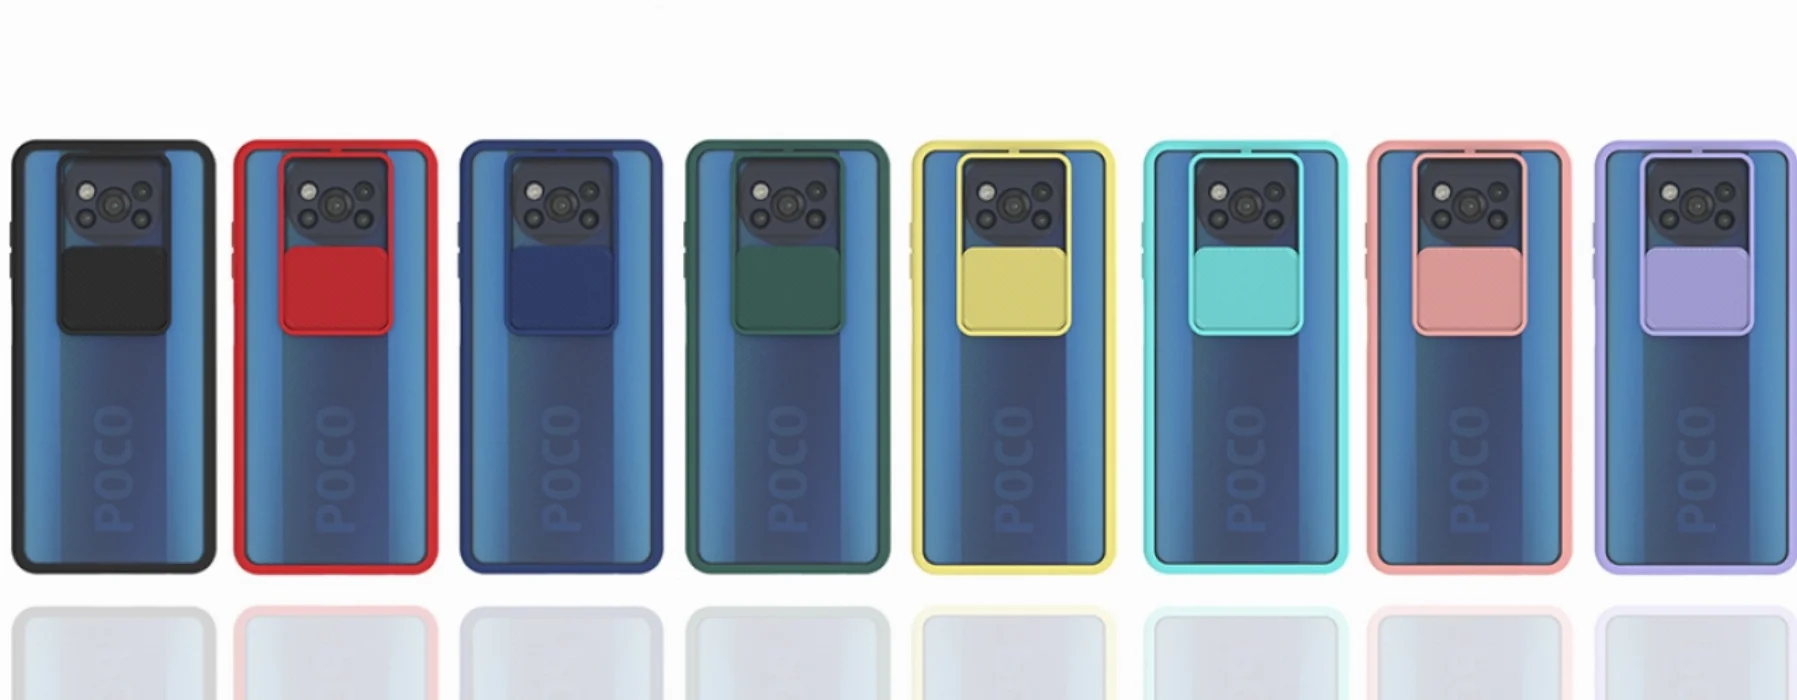 Xiaomi Poco X3 NFC Kılıf Silikon Sürgülü Lens Korumalı Buzlu Şeffaf - Siyah